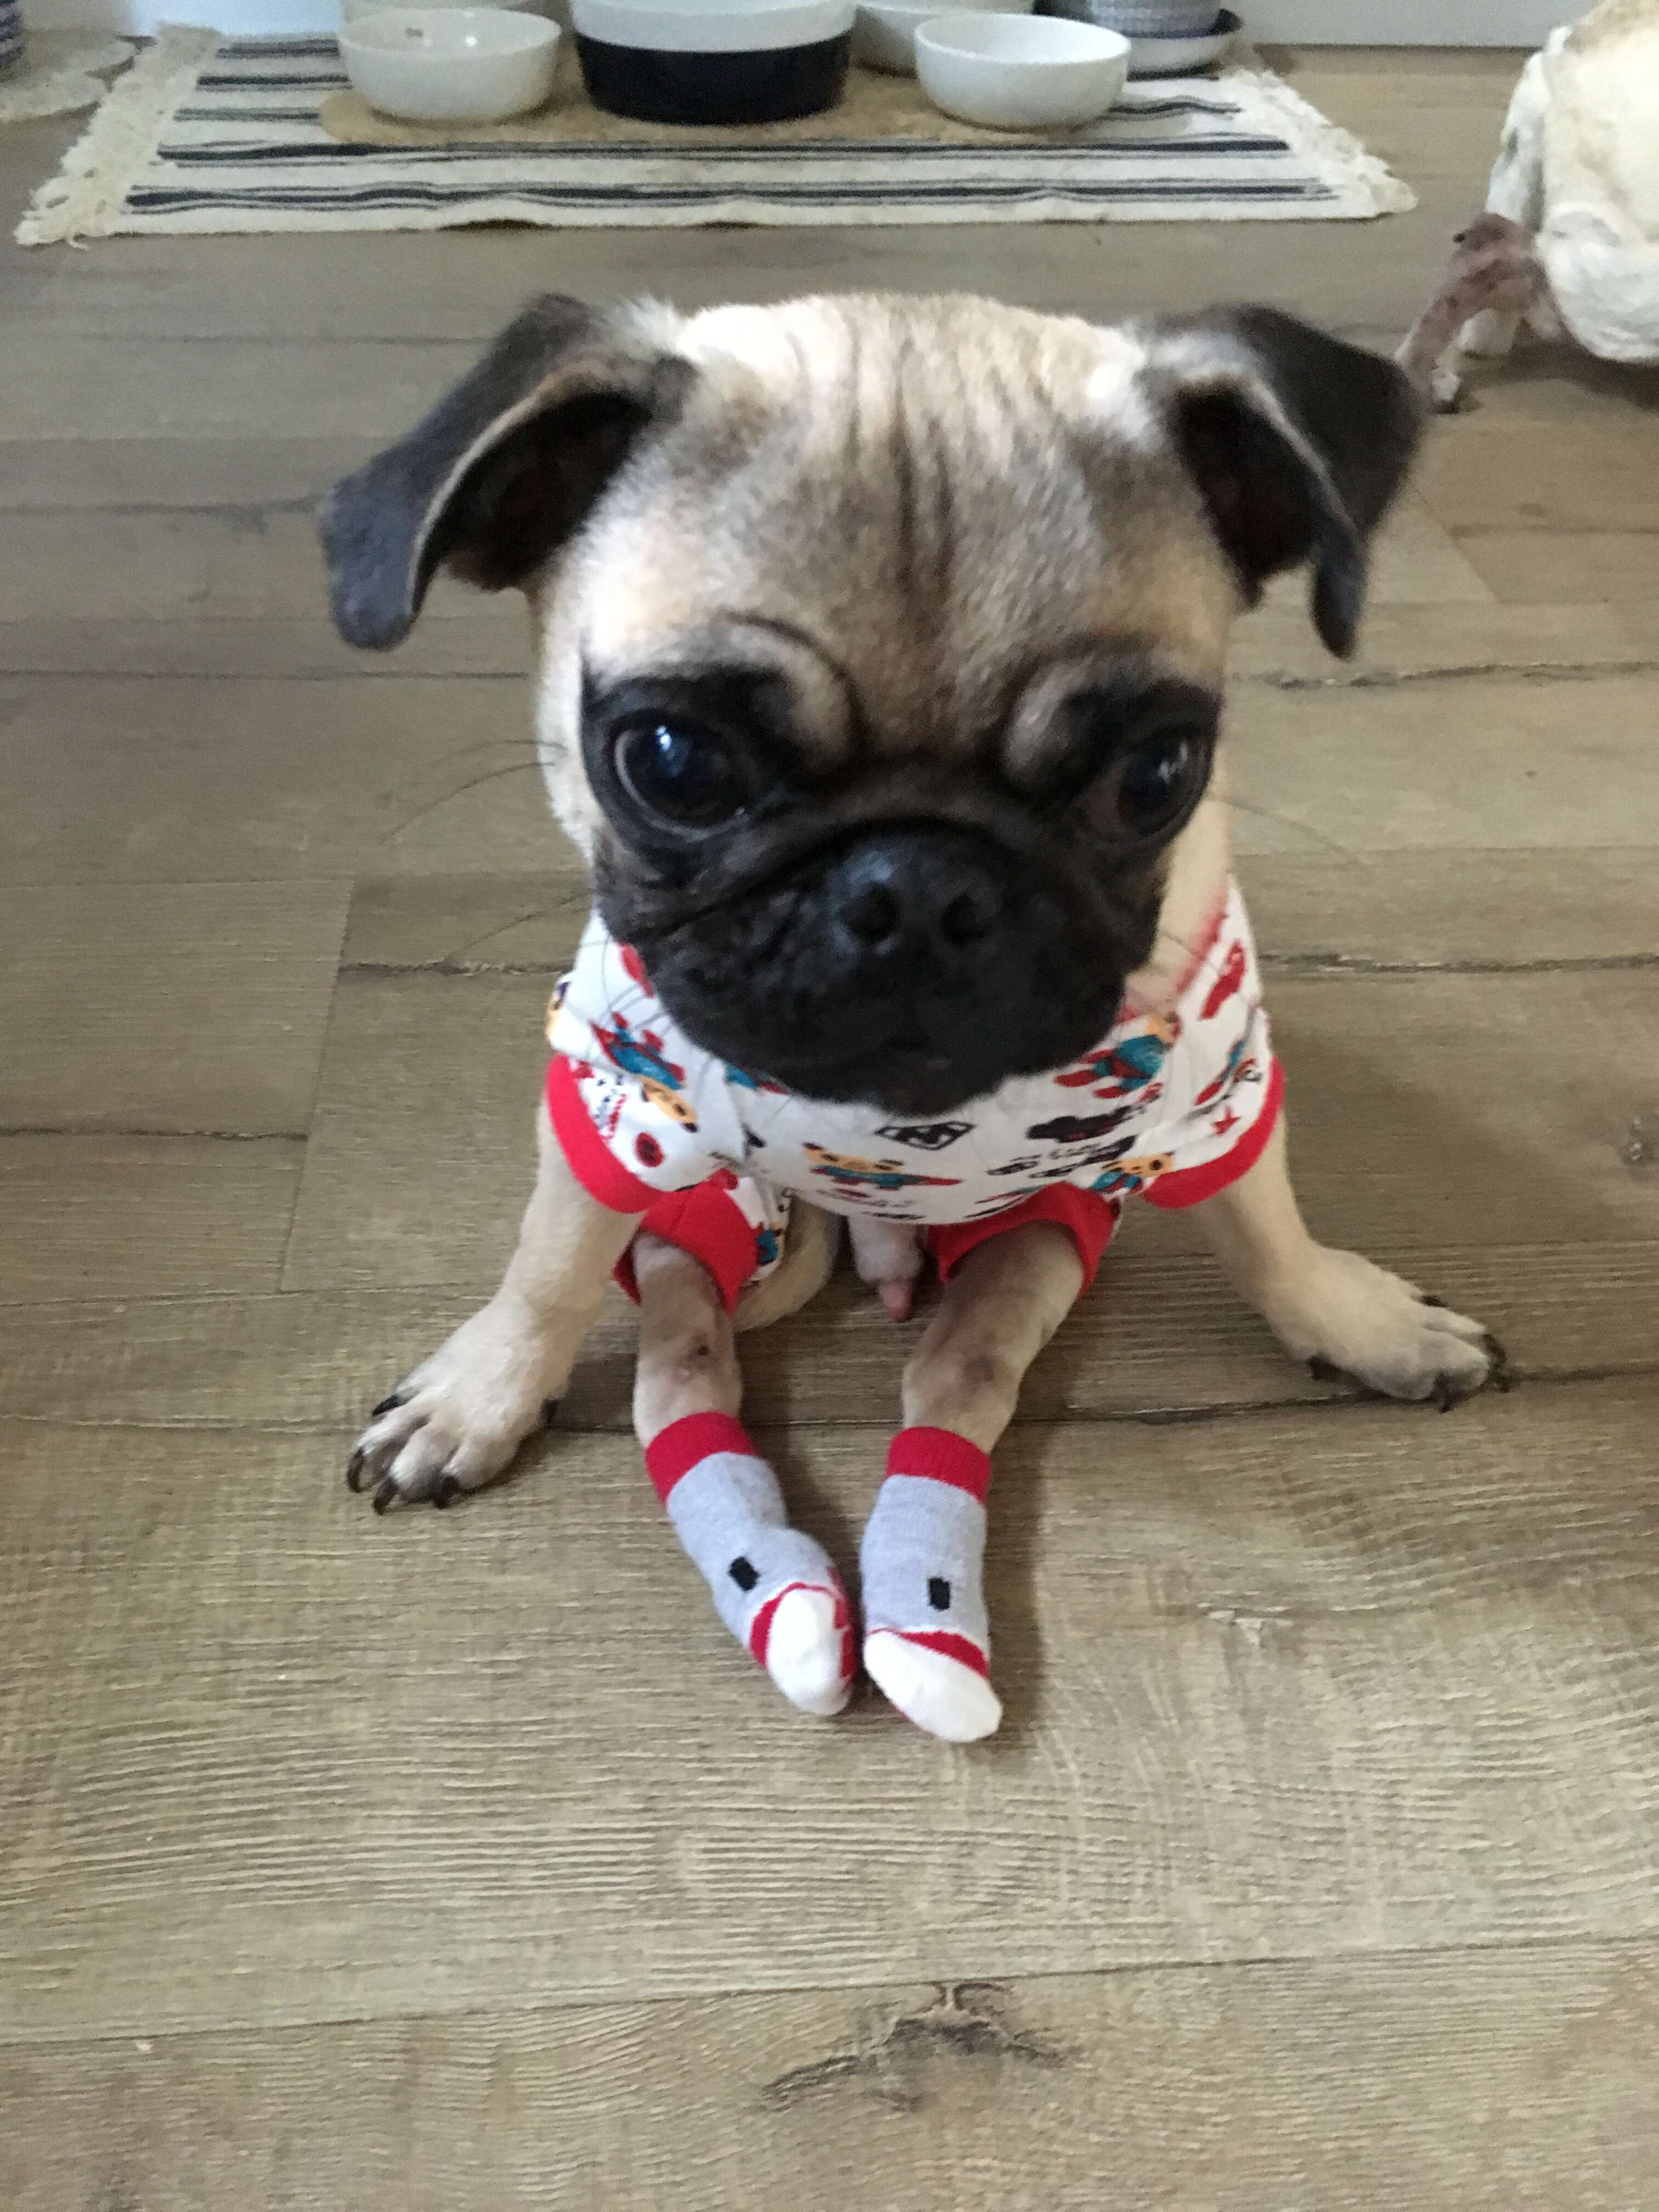 Injured pug in pajamas